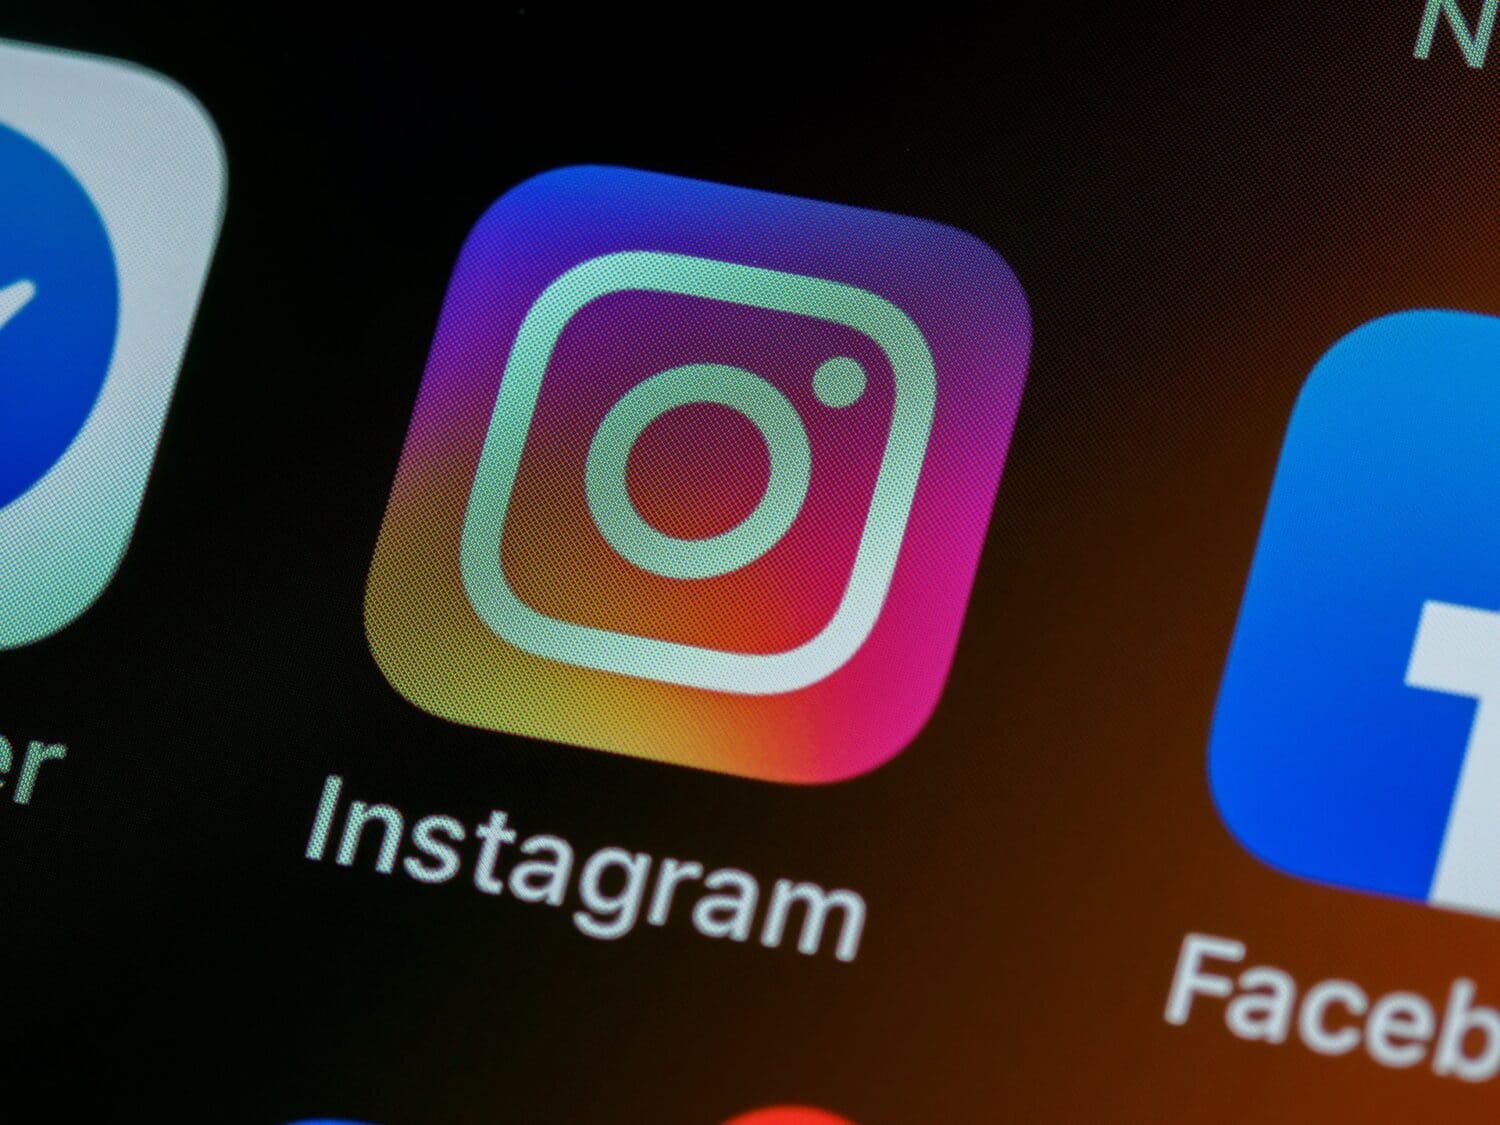 instagram abonnements payants bientot disponibles